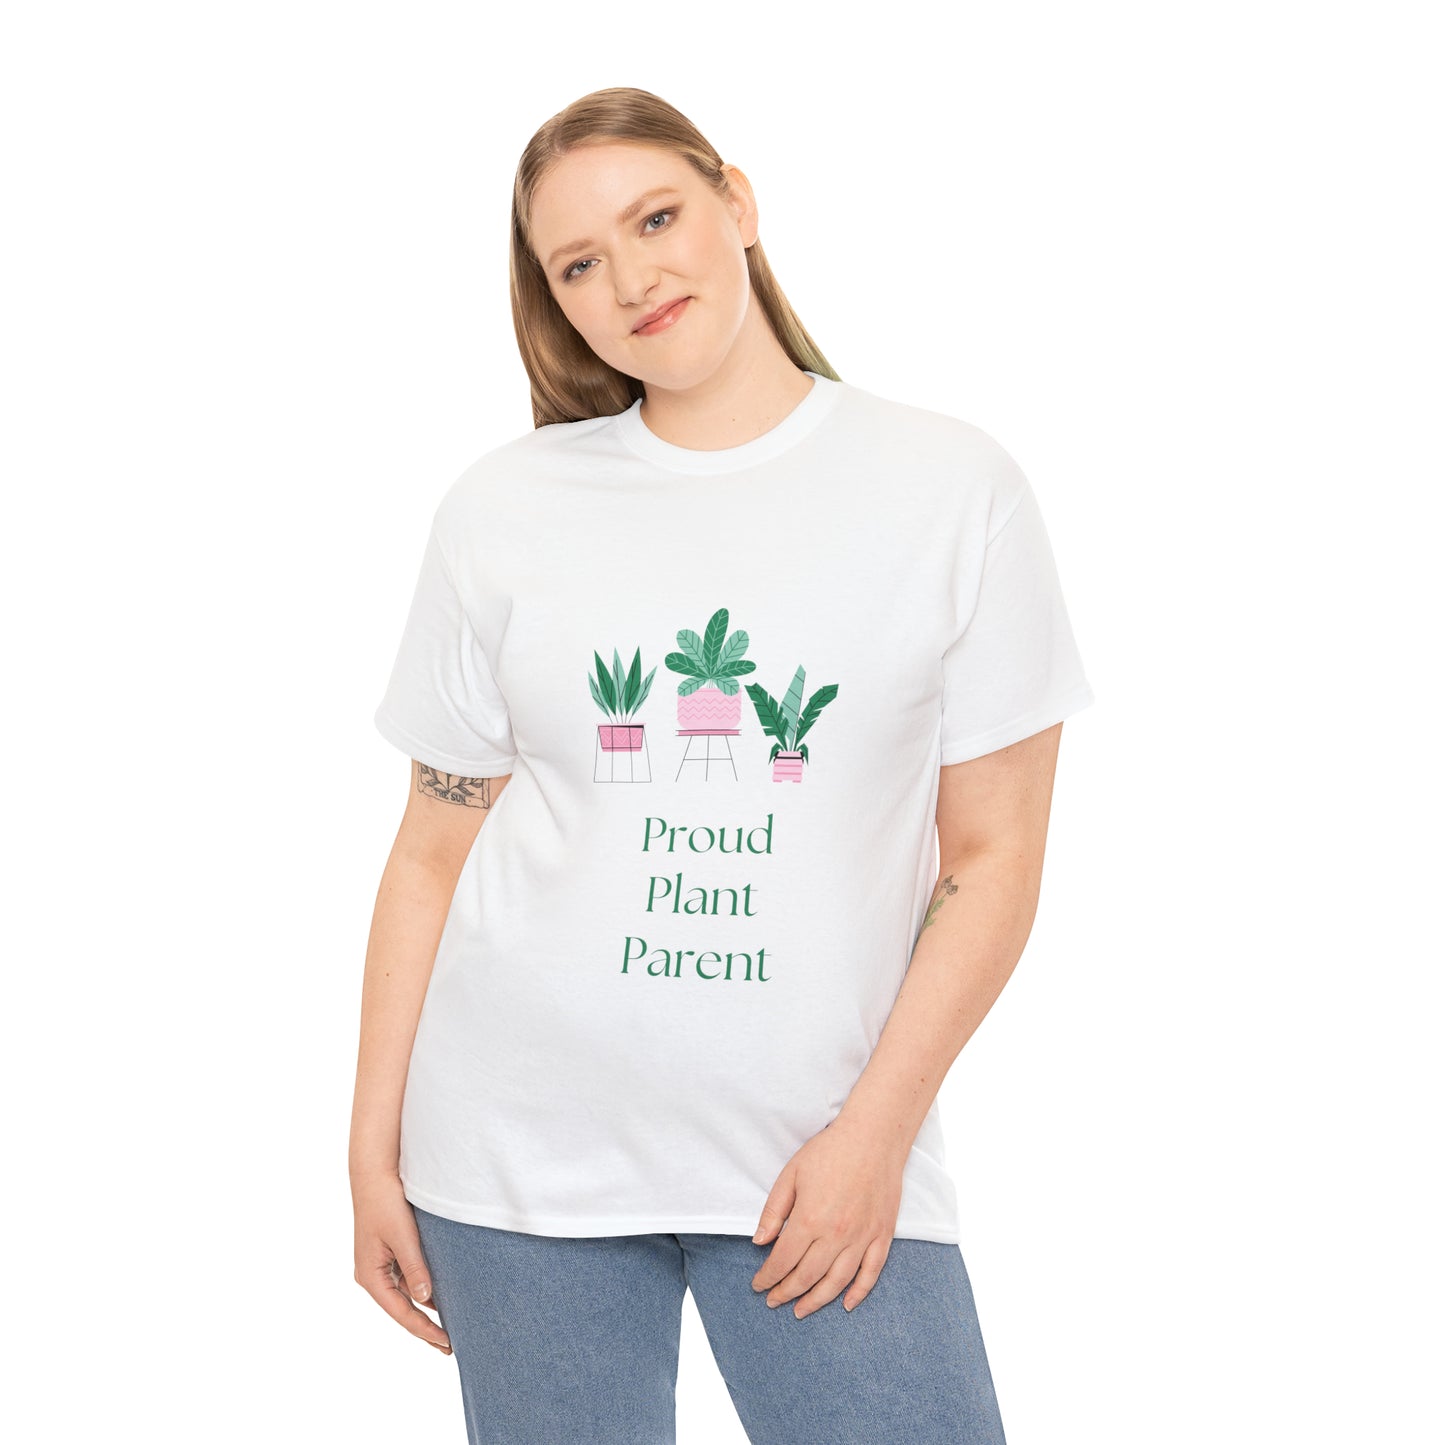 Proud Plant Parent Funny Plant T-Shirt Unisex